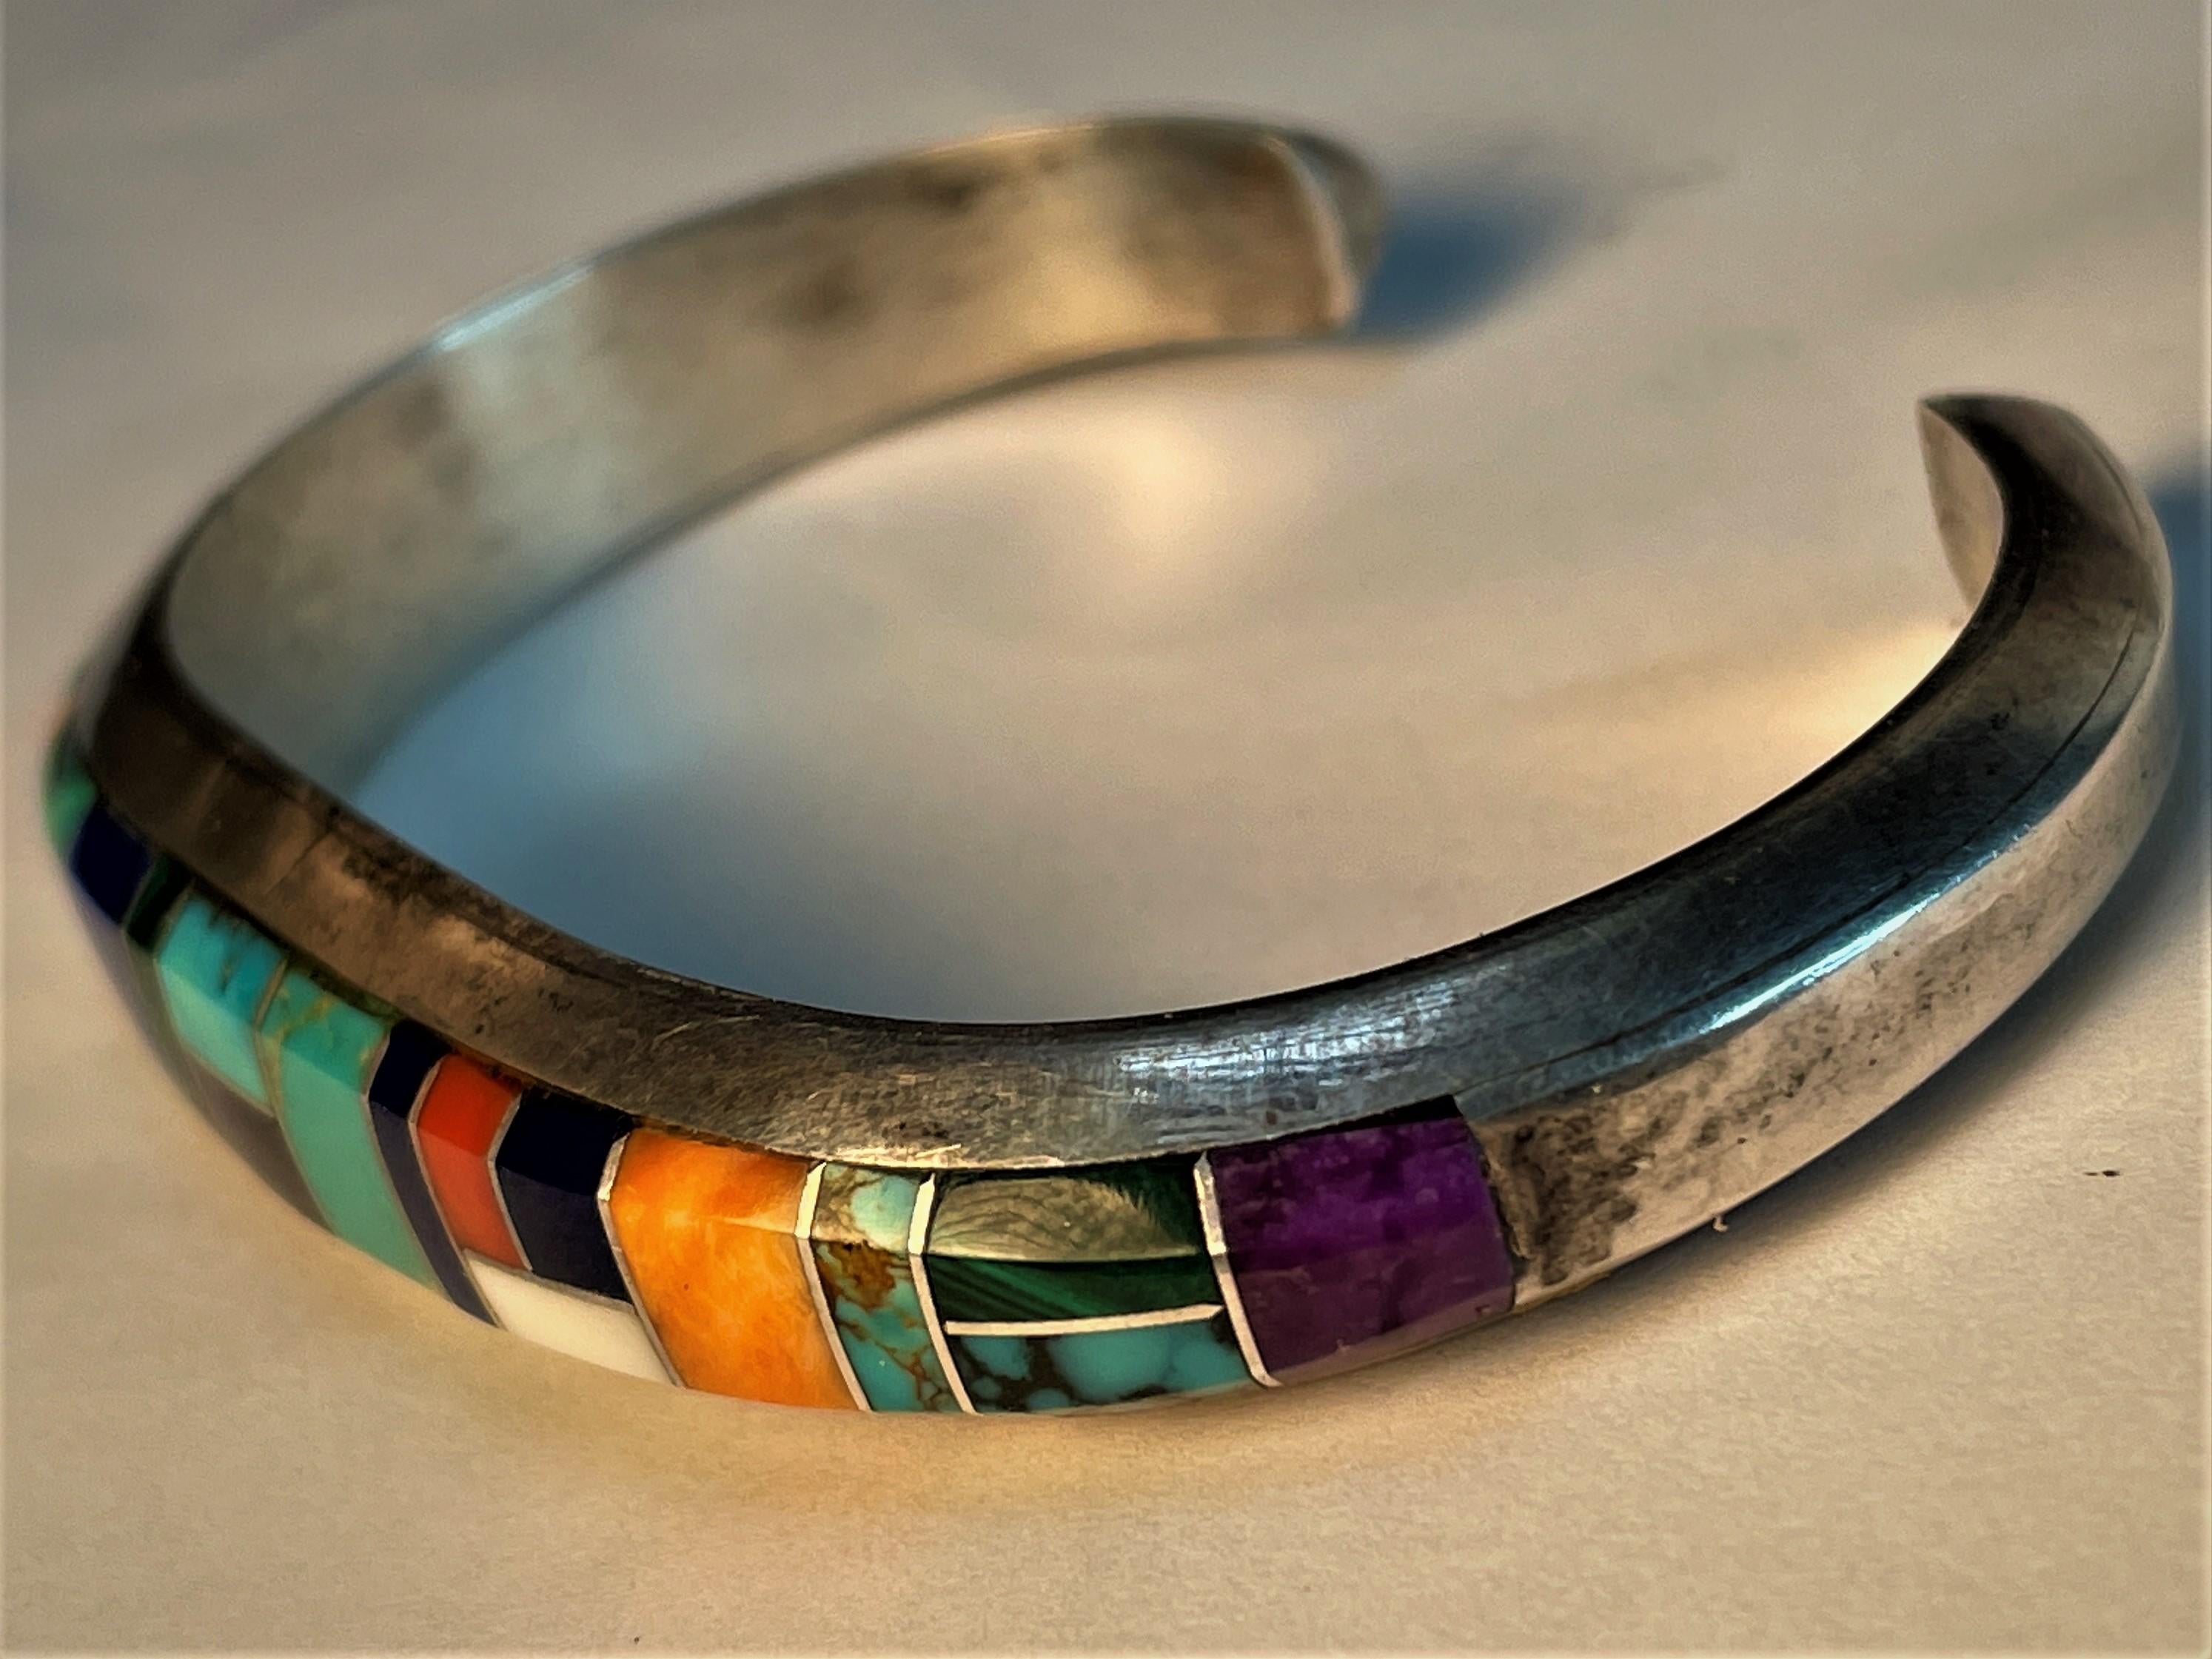 Dies ist eine feine Qualität Navajo Sterling Silber Manschette Armband mit verschiedenen Edelsteinen in verschiedenen Formen und Größen in einem ansprechenden Muster auf der Vorderseite eines schweren schön geformte Manschette Armband von Wilbur